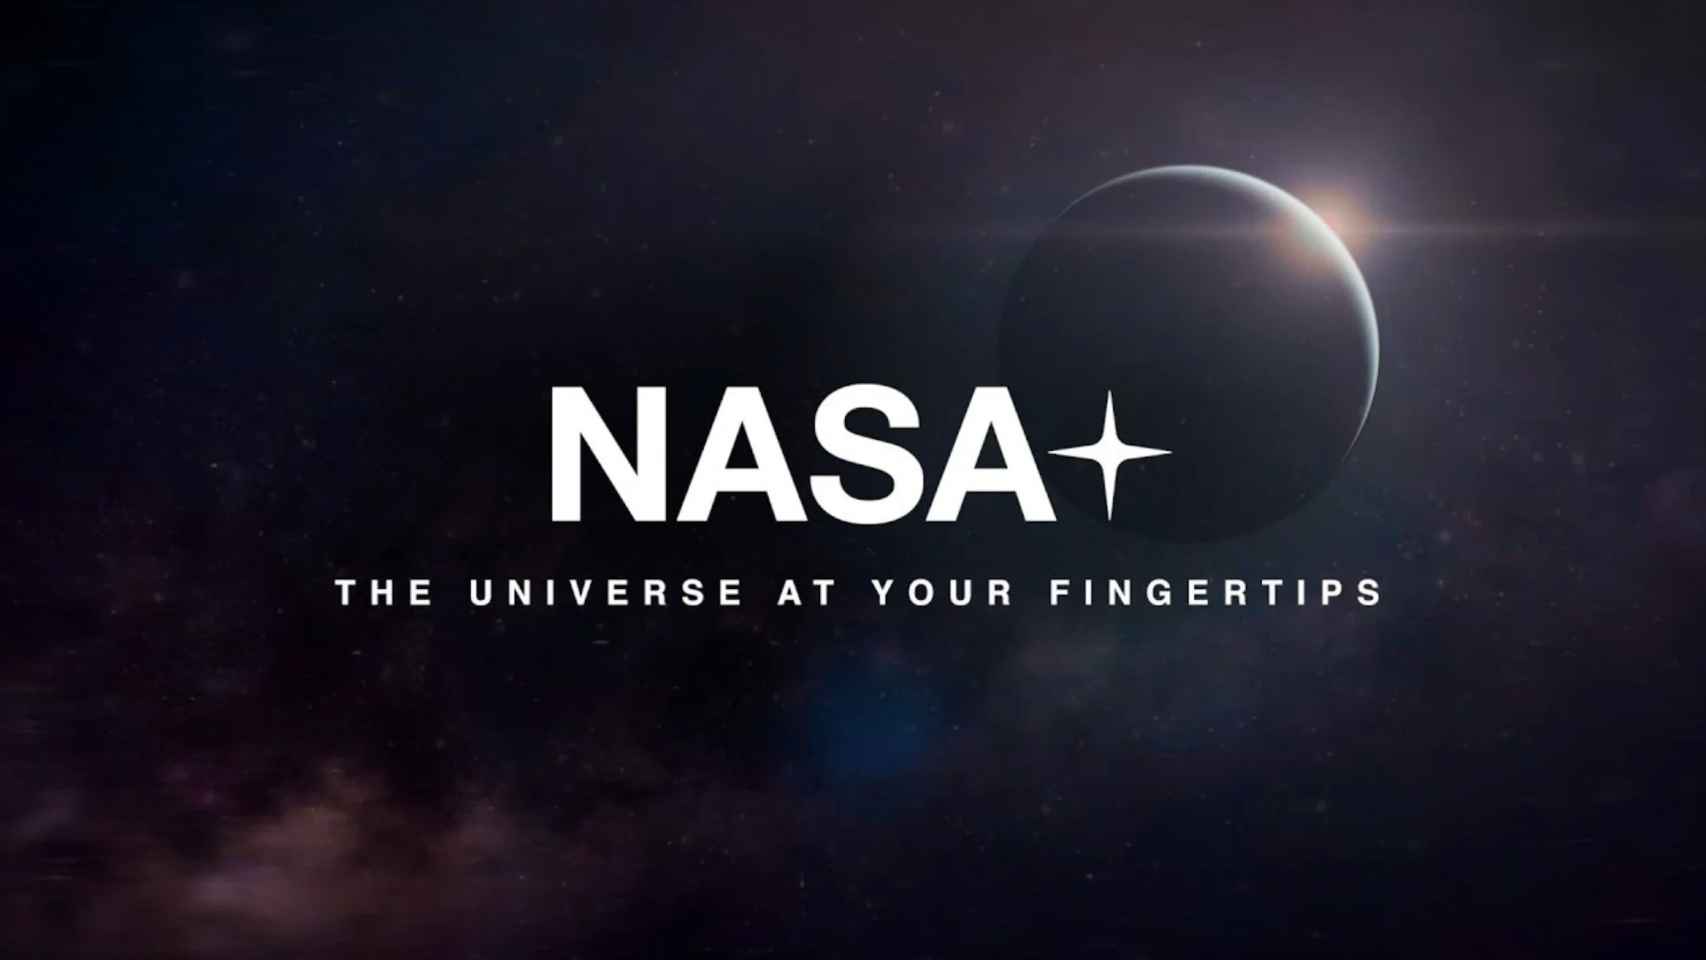 NASA+: la agencia espacial prepara una plataforma de contenido vía streaming